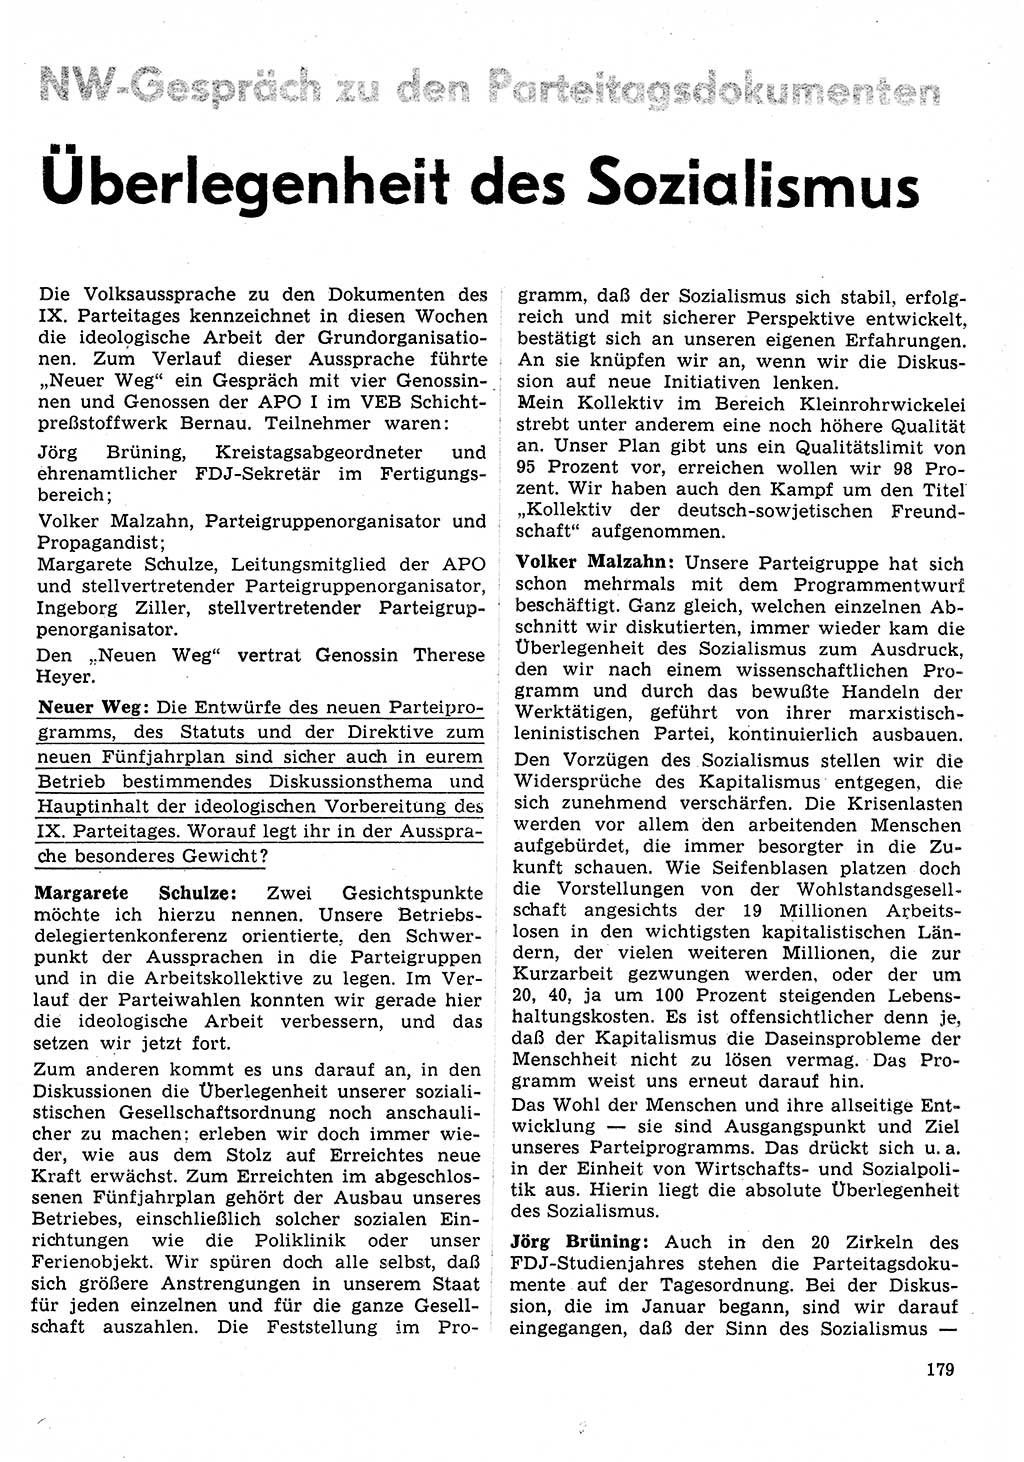 Neuer Weg (NW), Organ des Zentralkomitees (ZK) der SED (Sozialistische Einheitspartei Deutschlands) für Fragen des Parteilebens, 31. Jahrgang [Deutsche Demokratische Republik (DDR)] 1976, Seite 179 (NW ZK SED DDR 1976, S. 179)